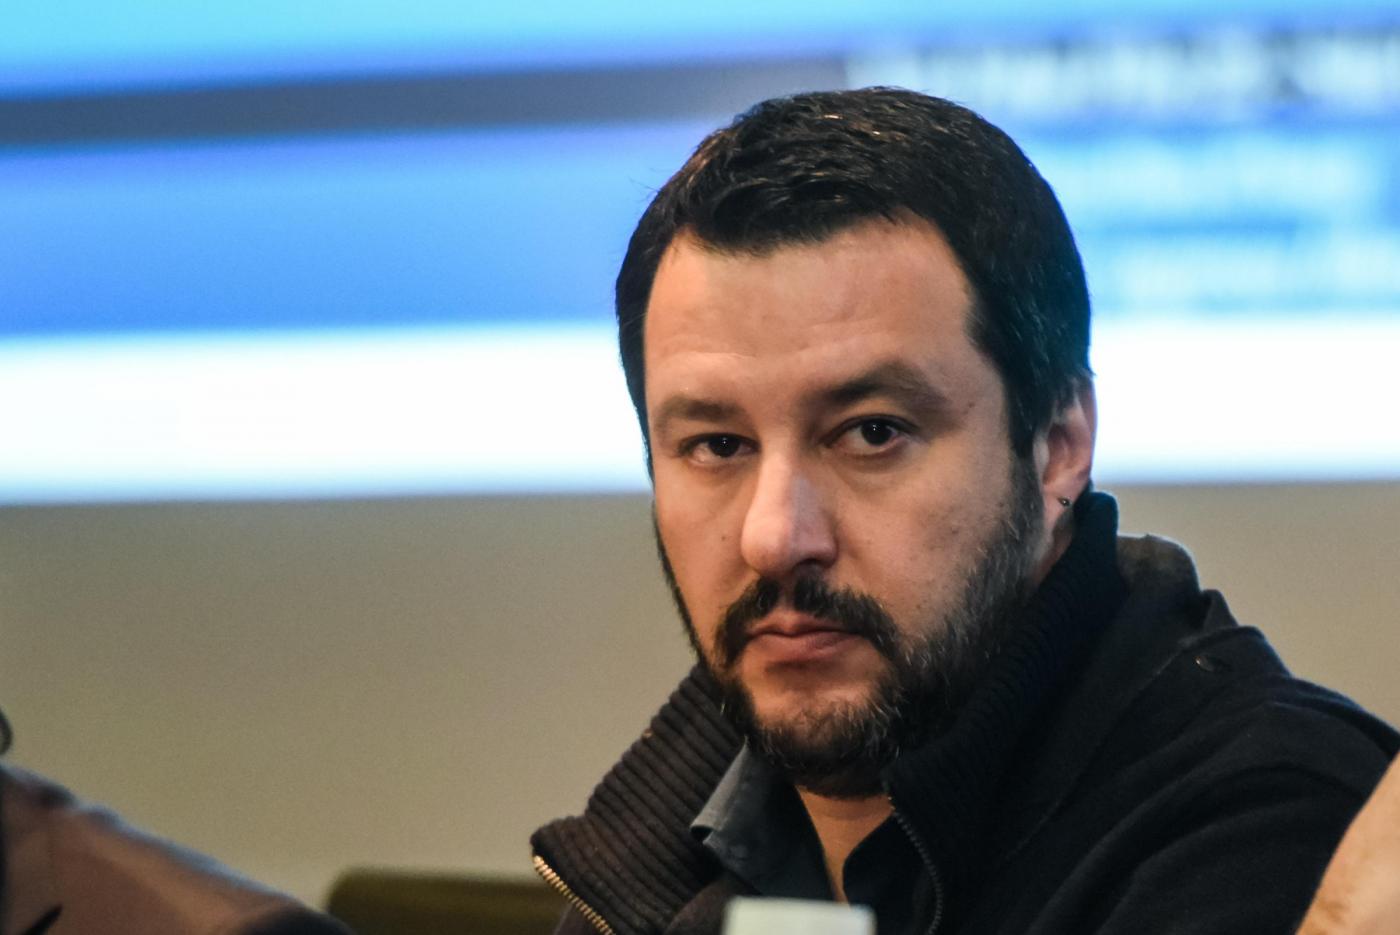 Vilipendio: Matteo Salvini rischia il processo. Offese alla magistratura